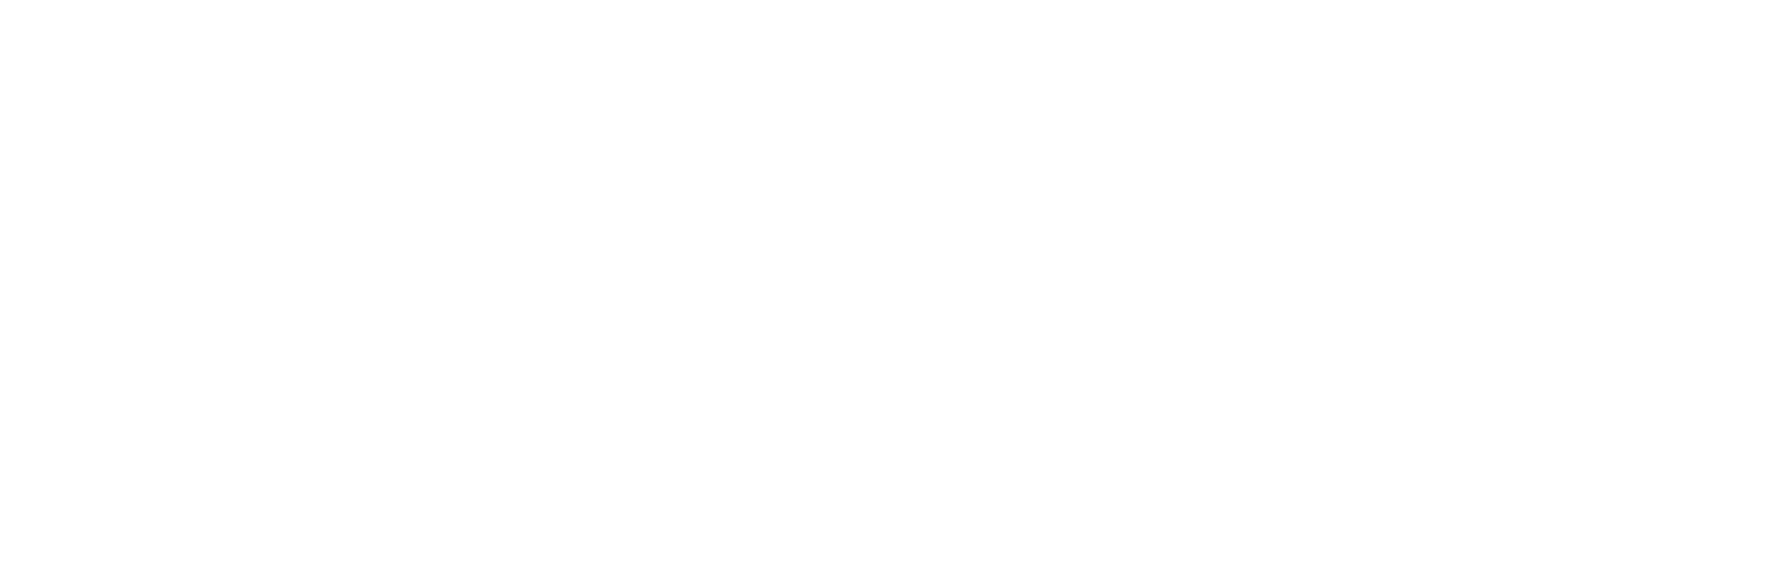 logo - Growthwise (white